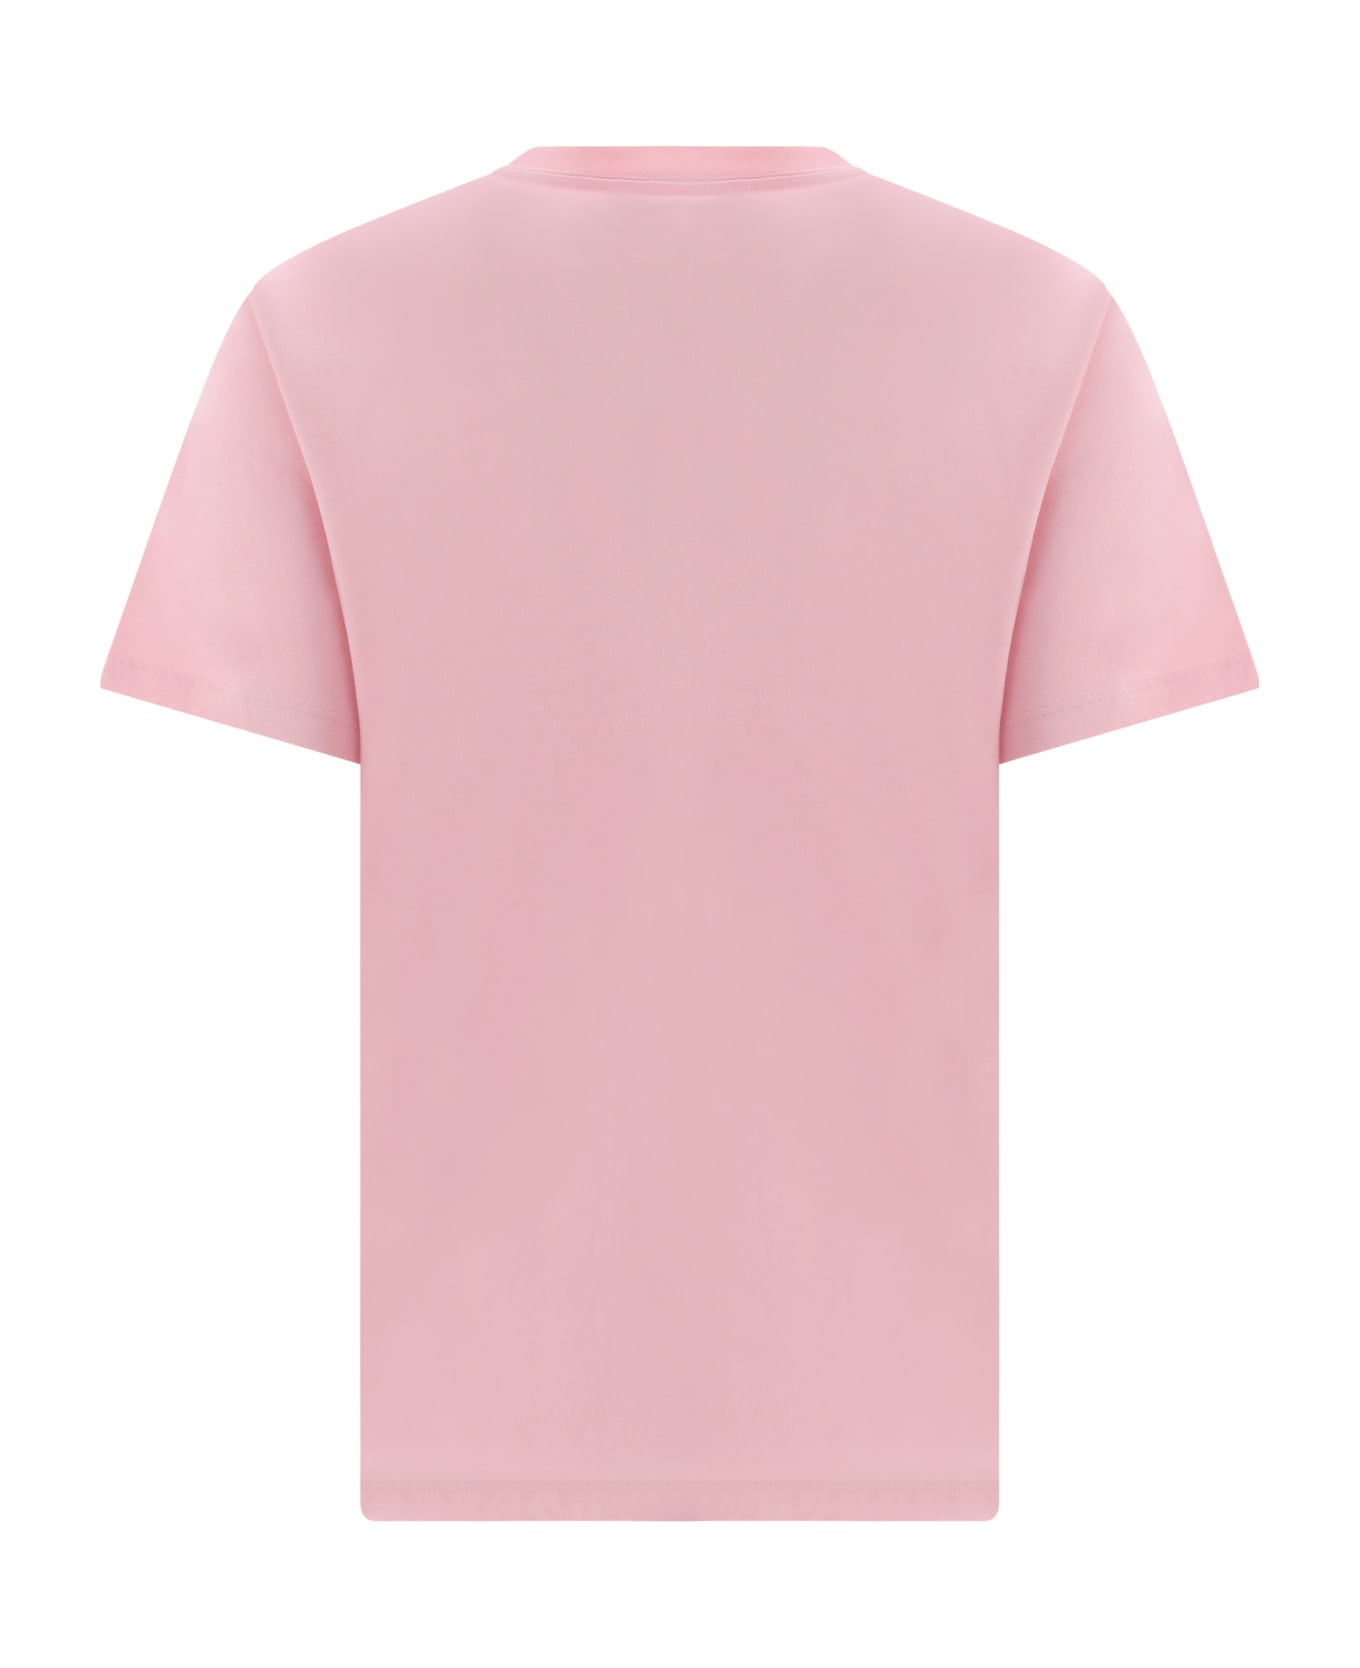 Versace T-shirt - Pink